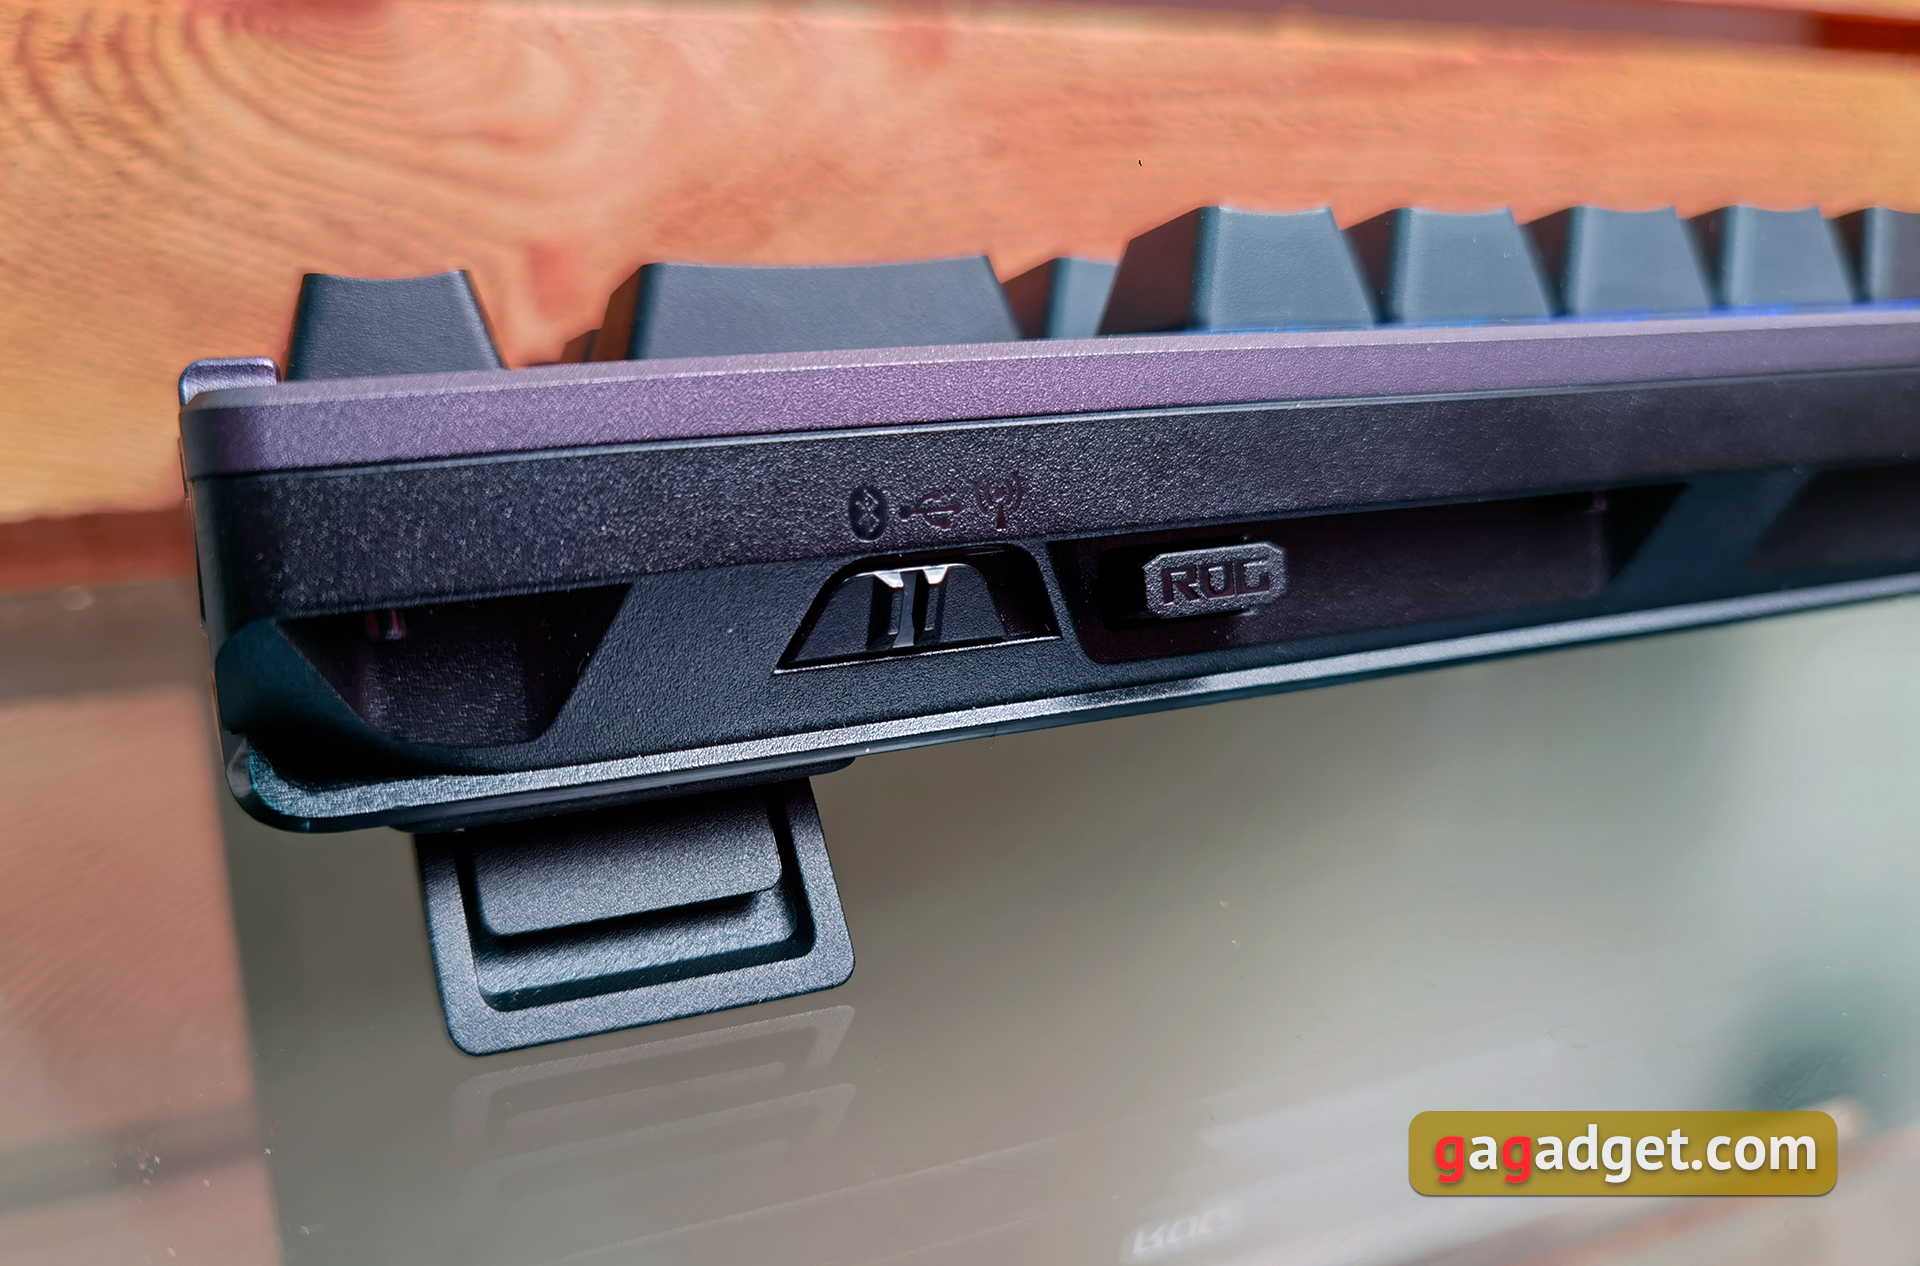 ASUS ROG Azoth im Test: eine kompromisslose mechanische Tastatur für Gamer, die man nicht erwarten würde-18